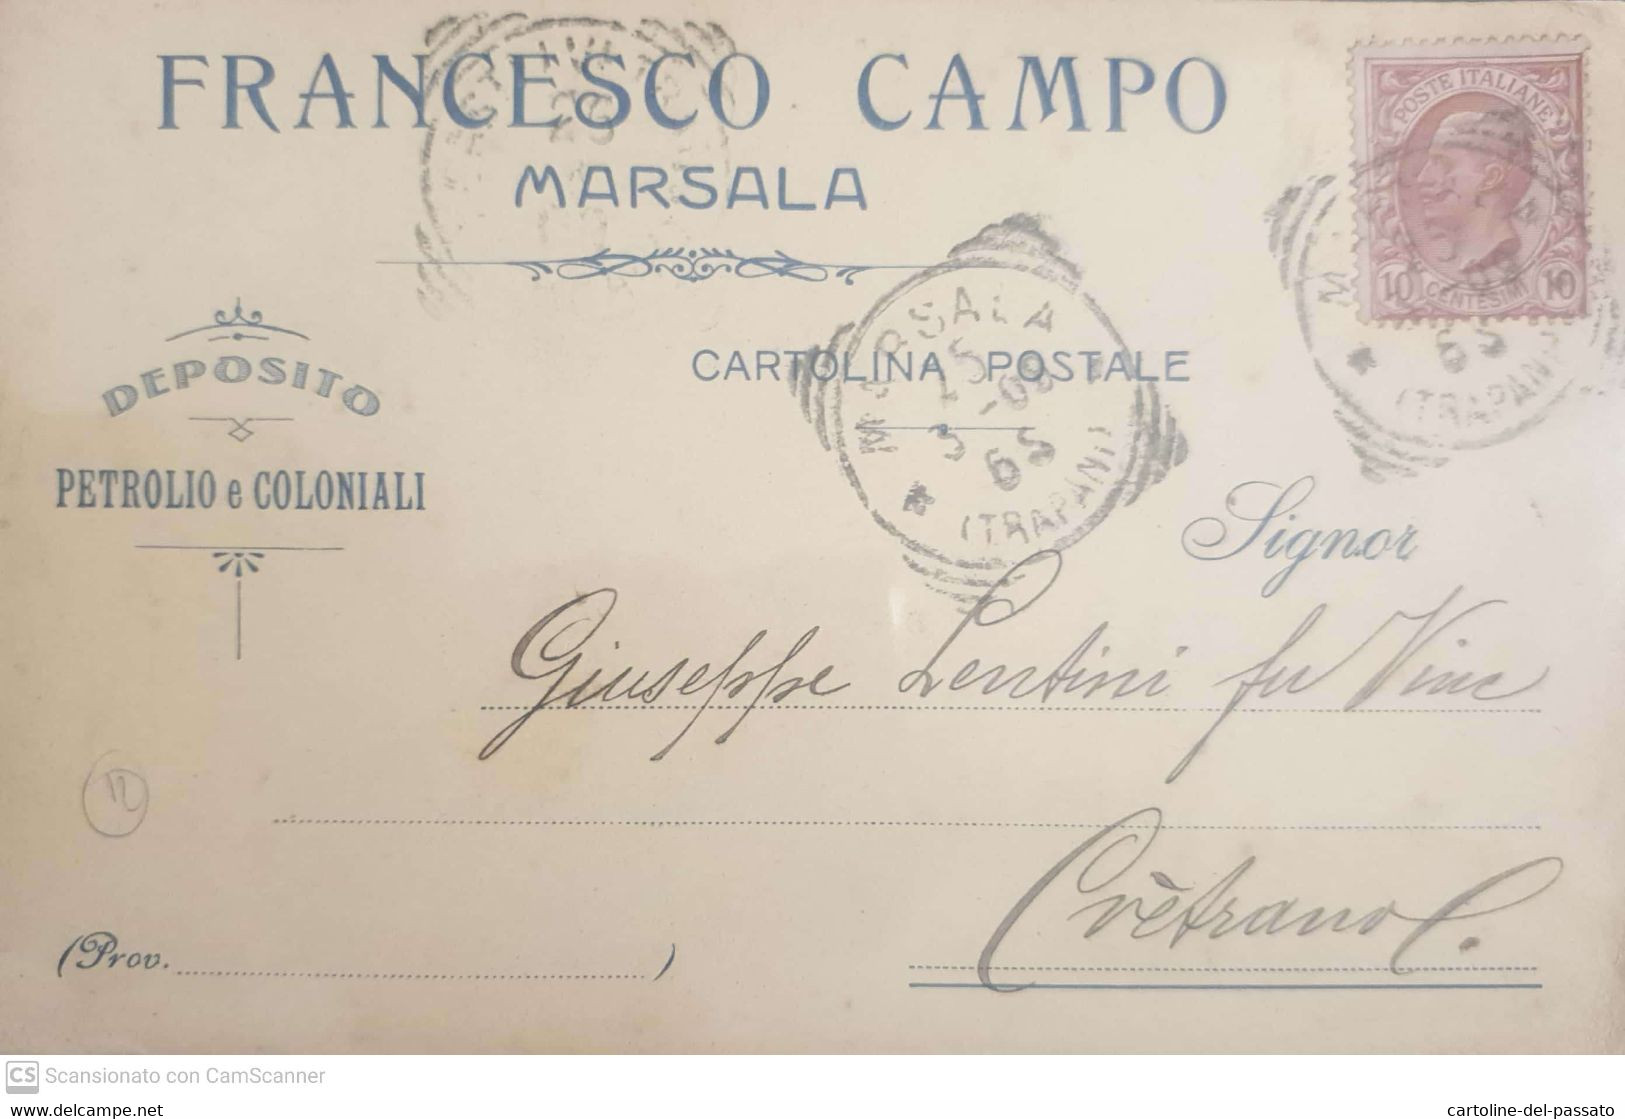 MARSALA  DEPOSITO PETROLIO E COLONIALI  F. CAMPO  1909 - Marsala